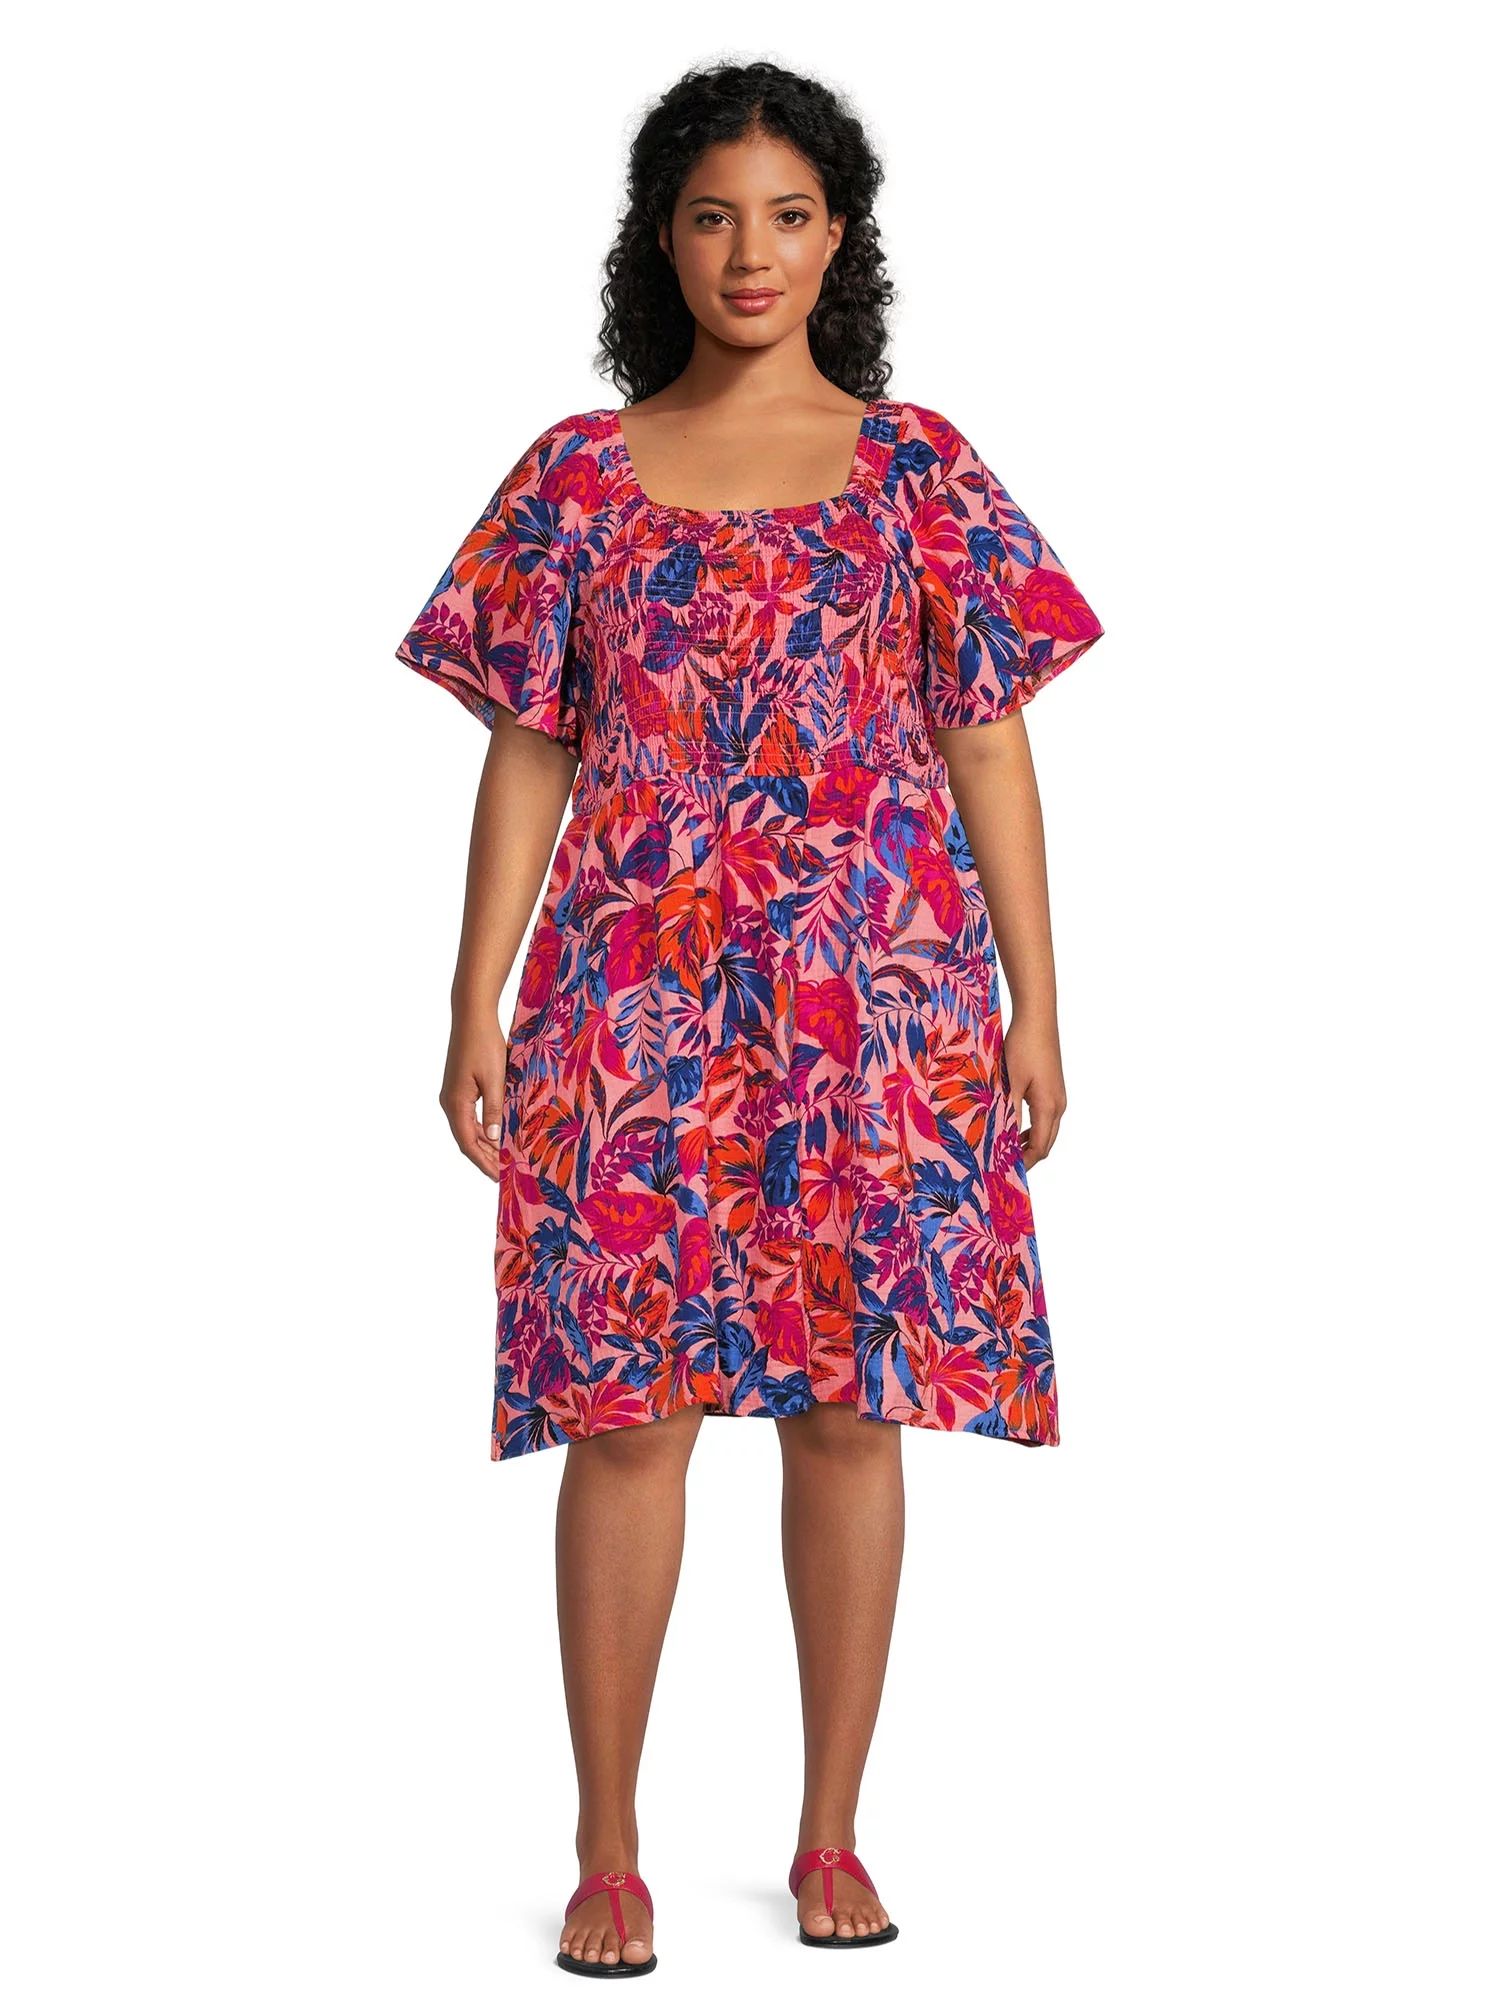 Terra & SkyTerra & Sky Women's Plus Size Flutter Sleeve Fit & Flare DressUSD$24.98(4.3)4.3 stars ... | Walmart (US)